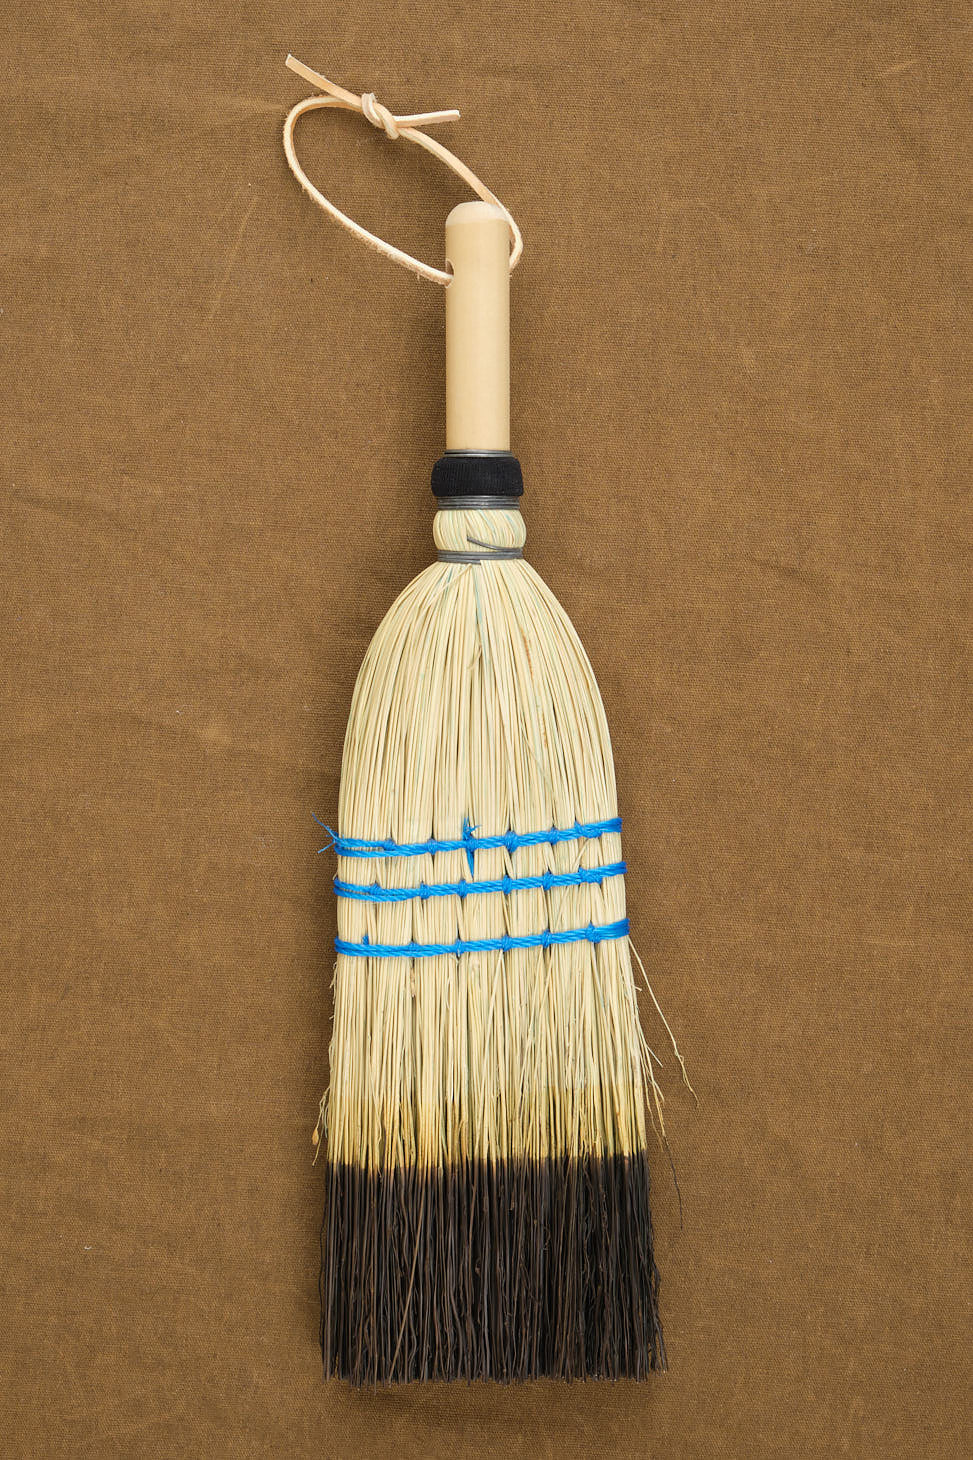 Lostine  Broom holder, Broom, Broom storage